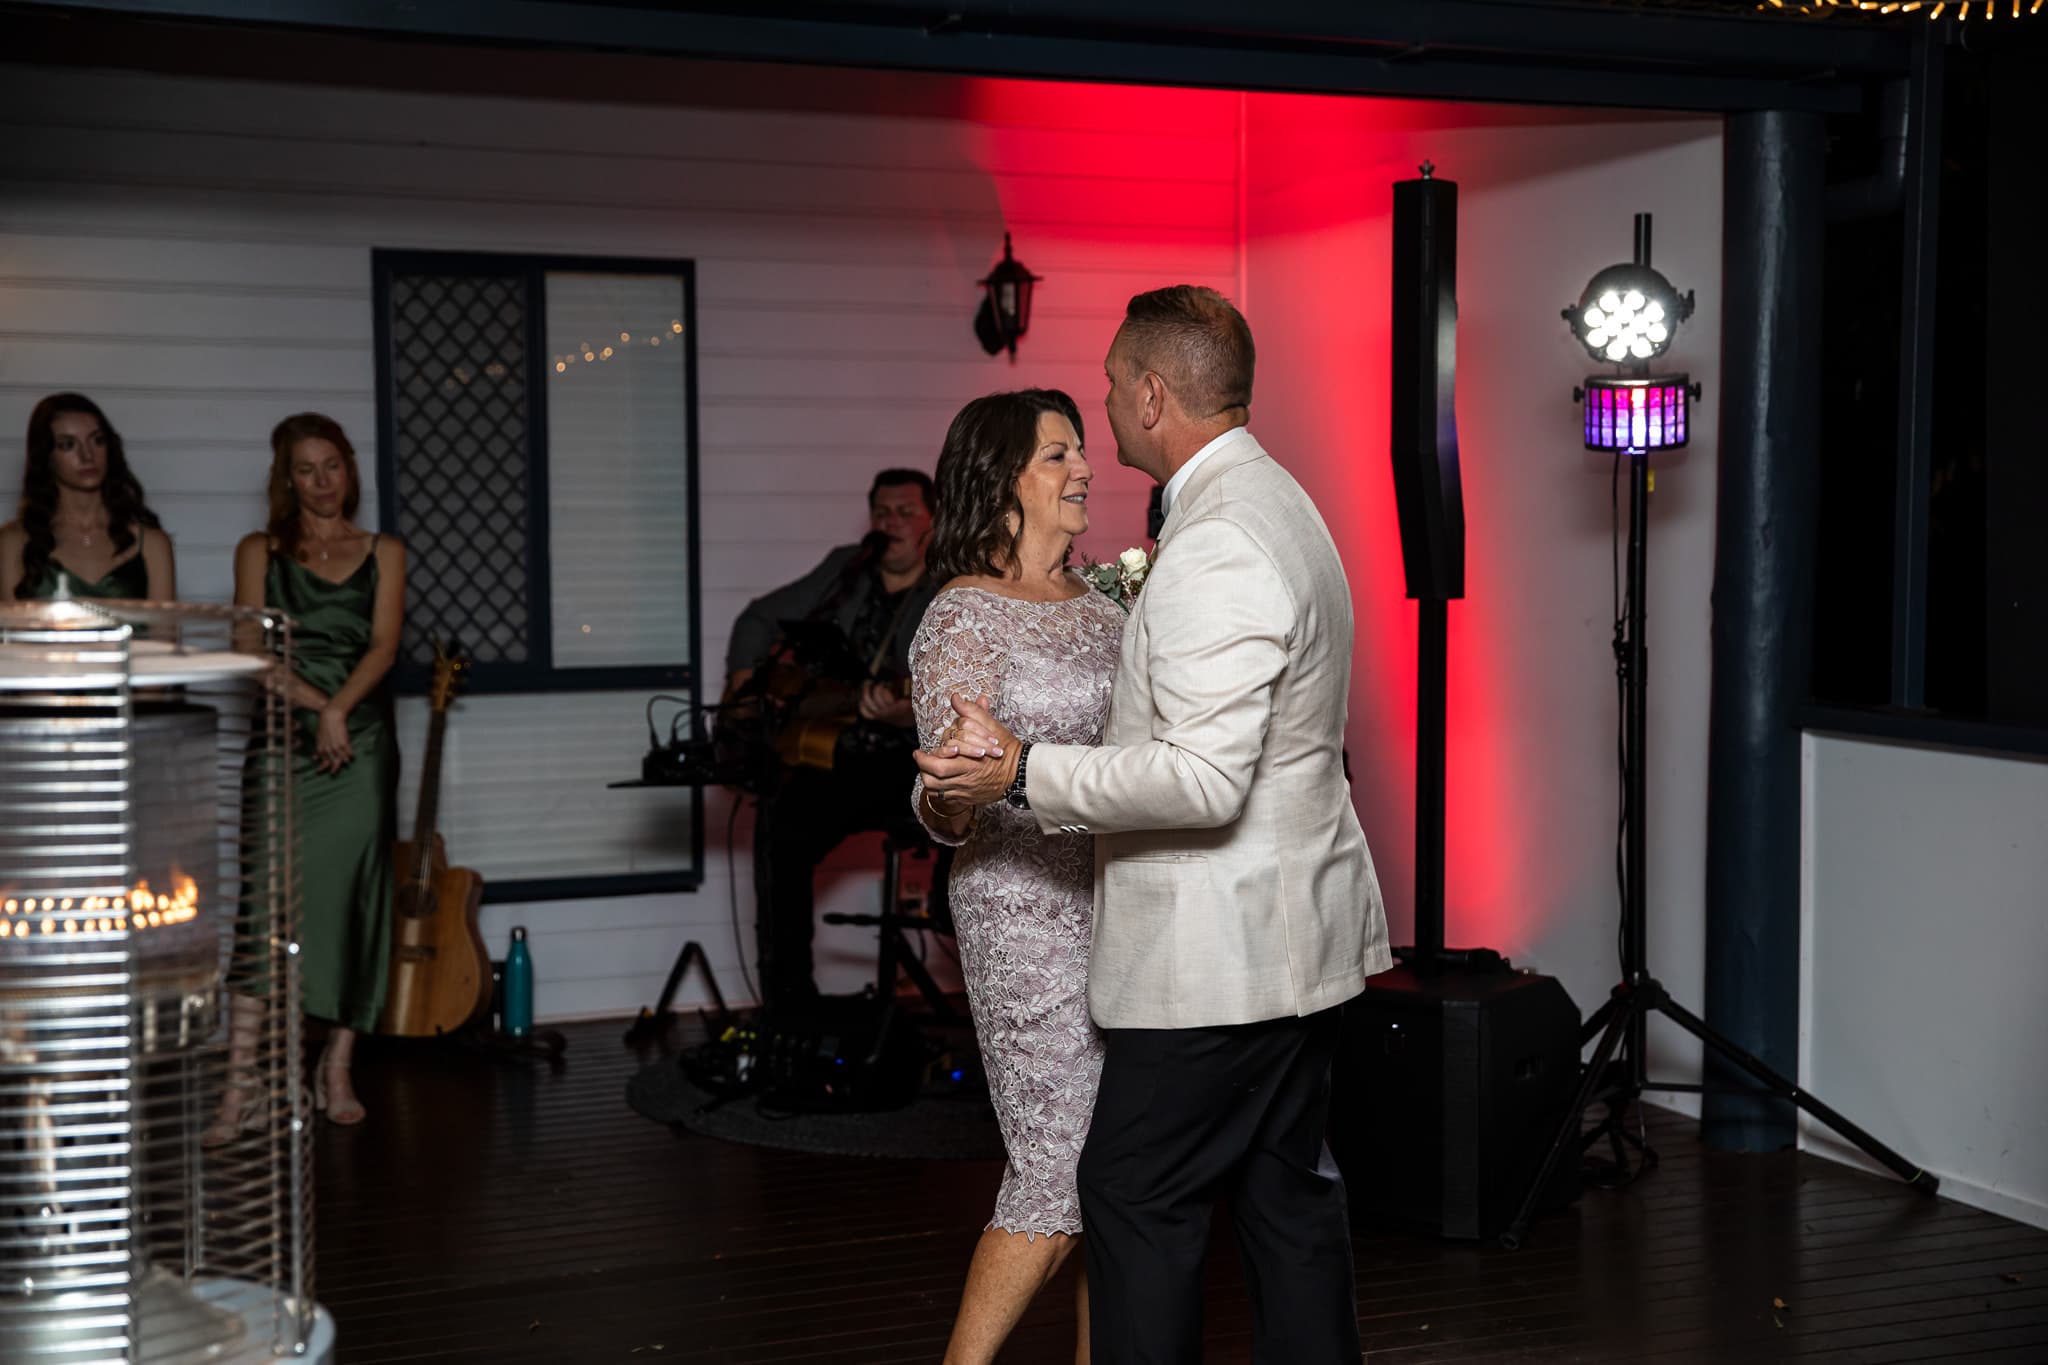 Wedding couple dancing at the reception photos at The Secret Garden Estate, Tamborine Mountain.